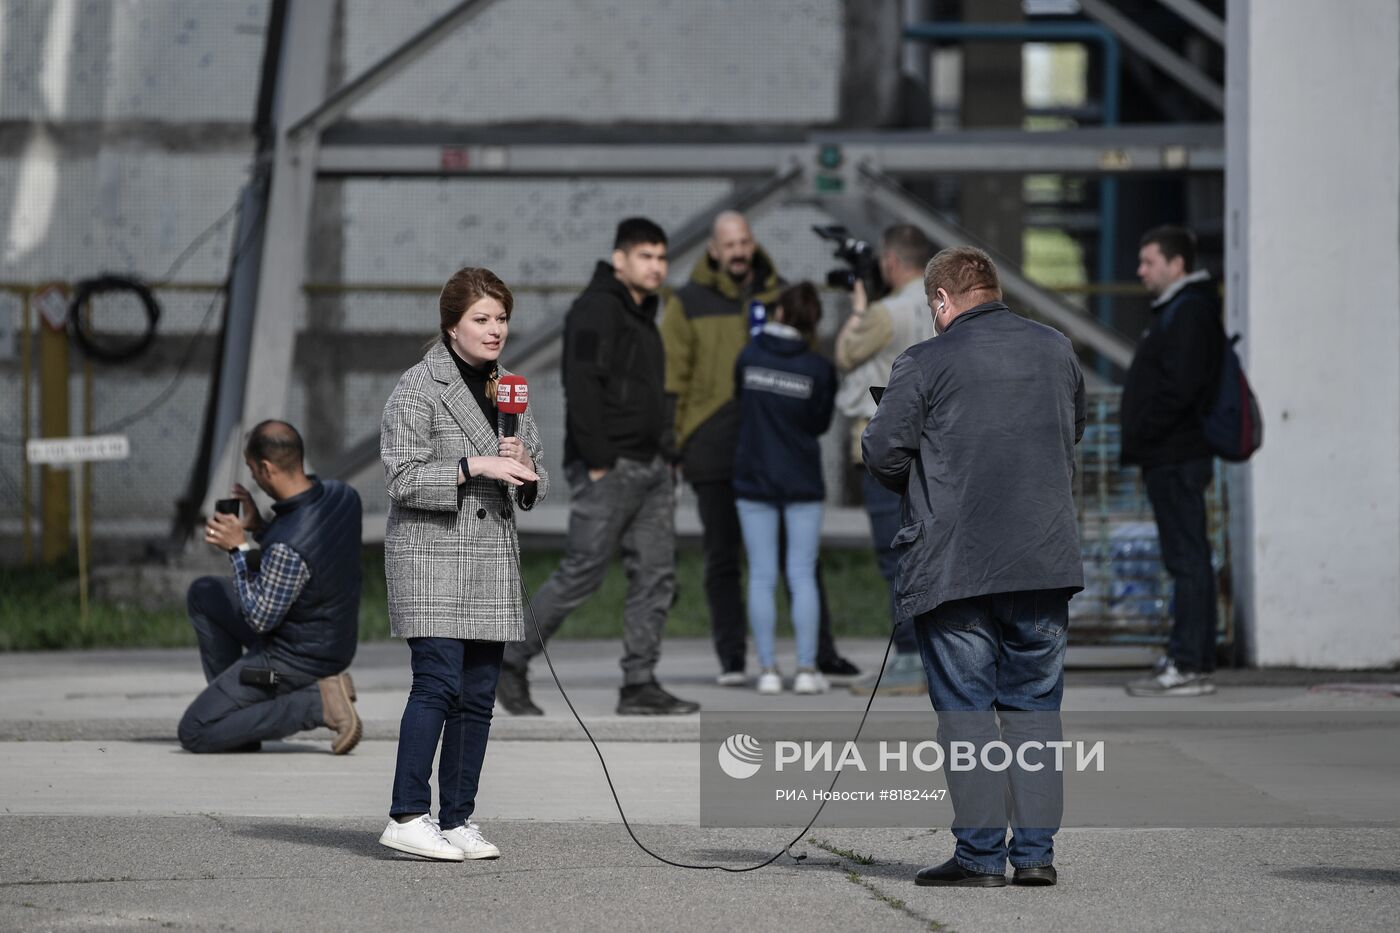 Запорожскую АЭС посетили иностранные журналисты